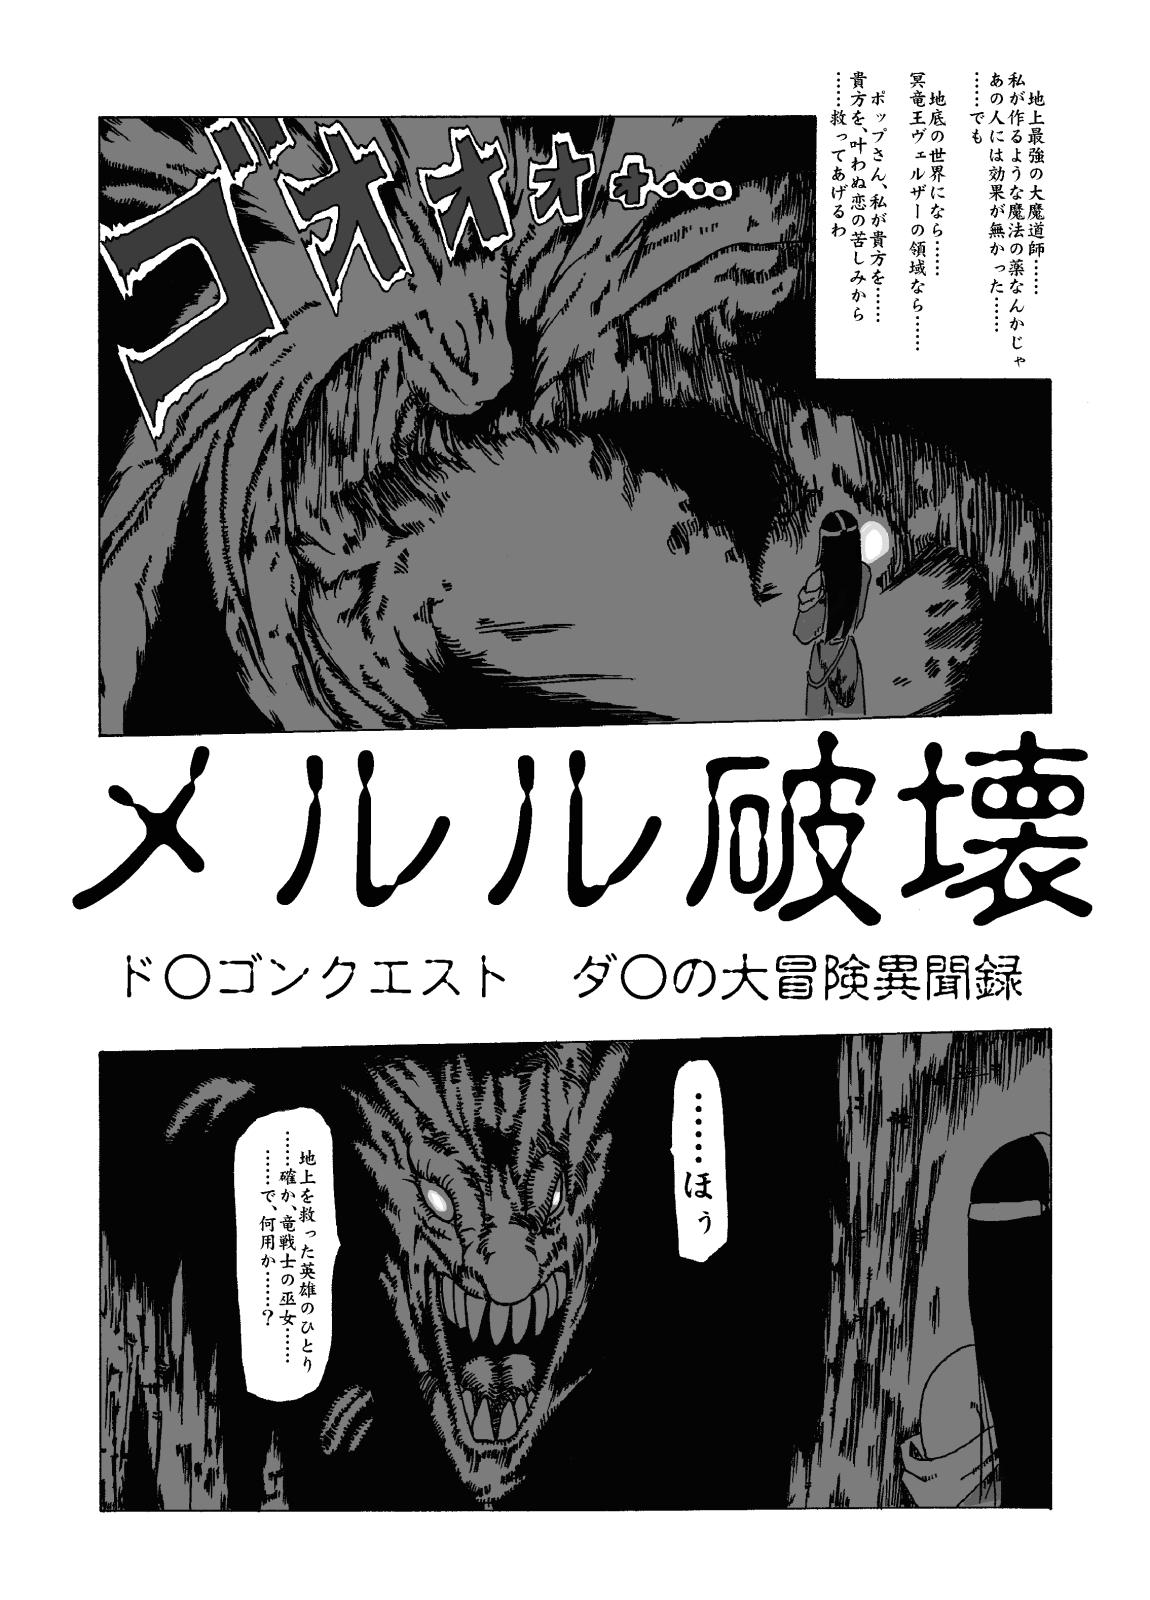 Fucks meruru hakai-dragon qowst dai no daibouken ibunroku kijinro Toys - Page 3